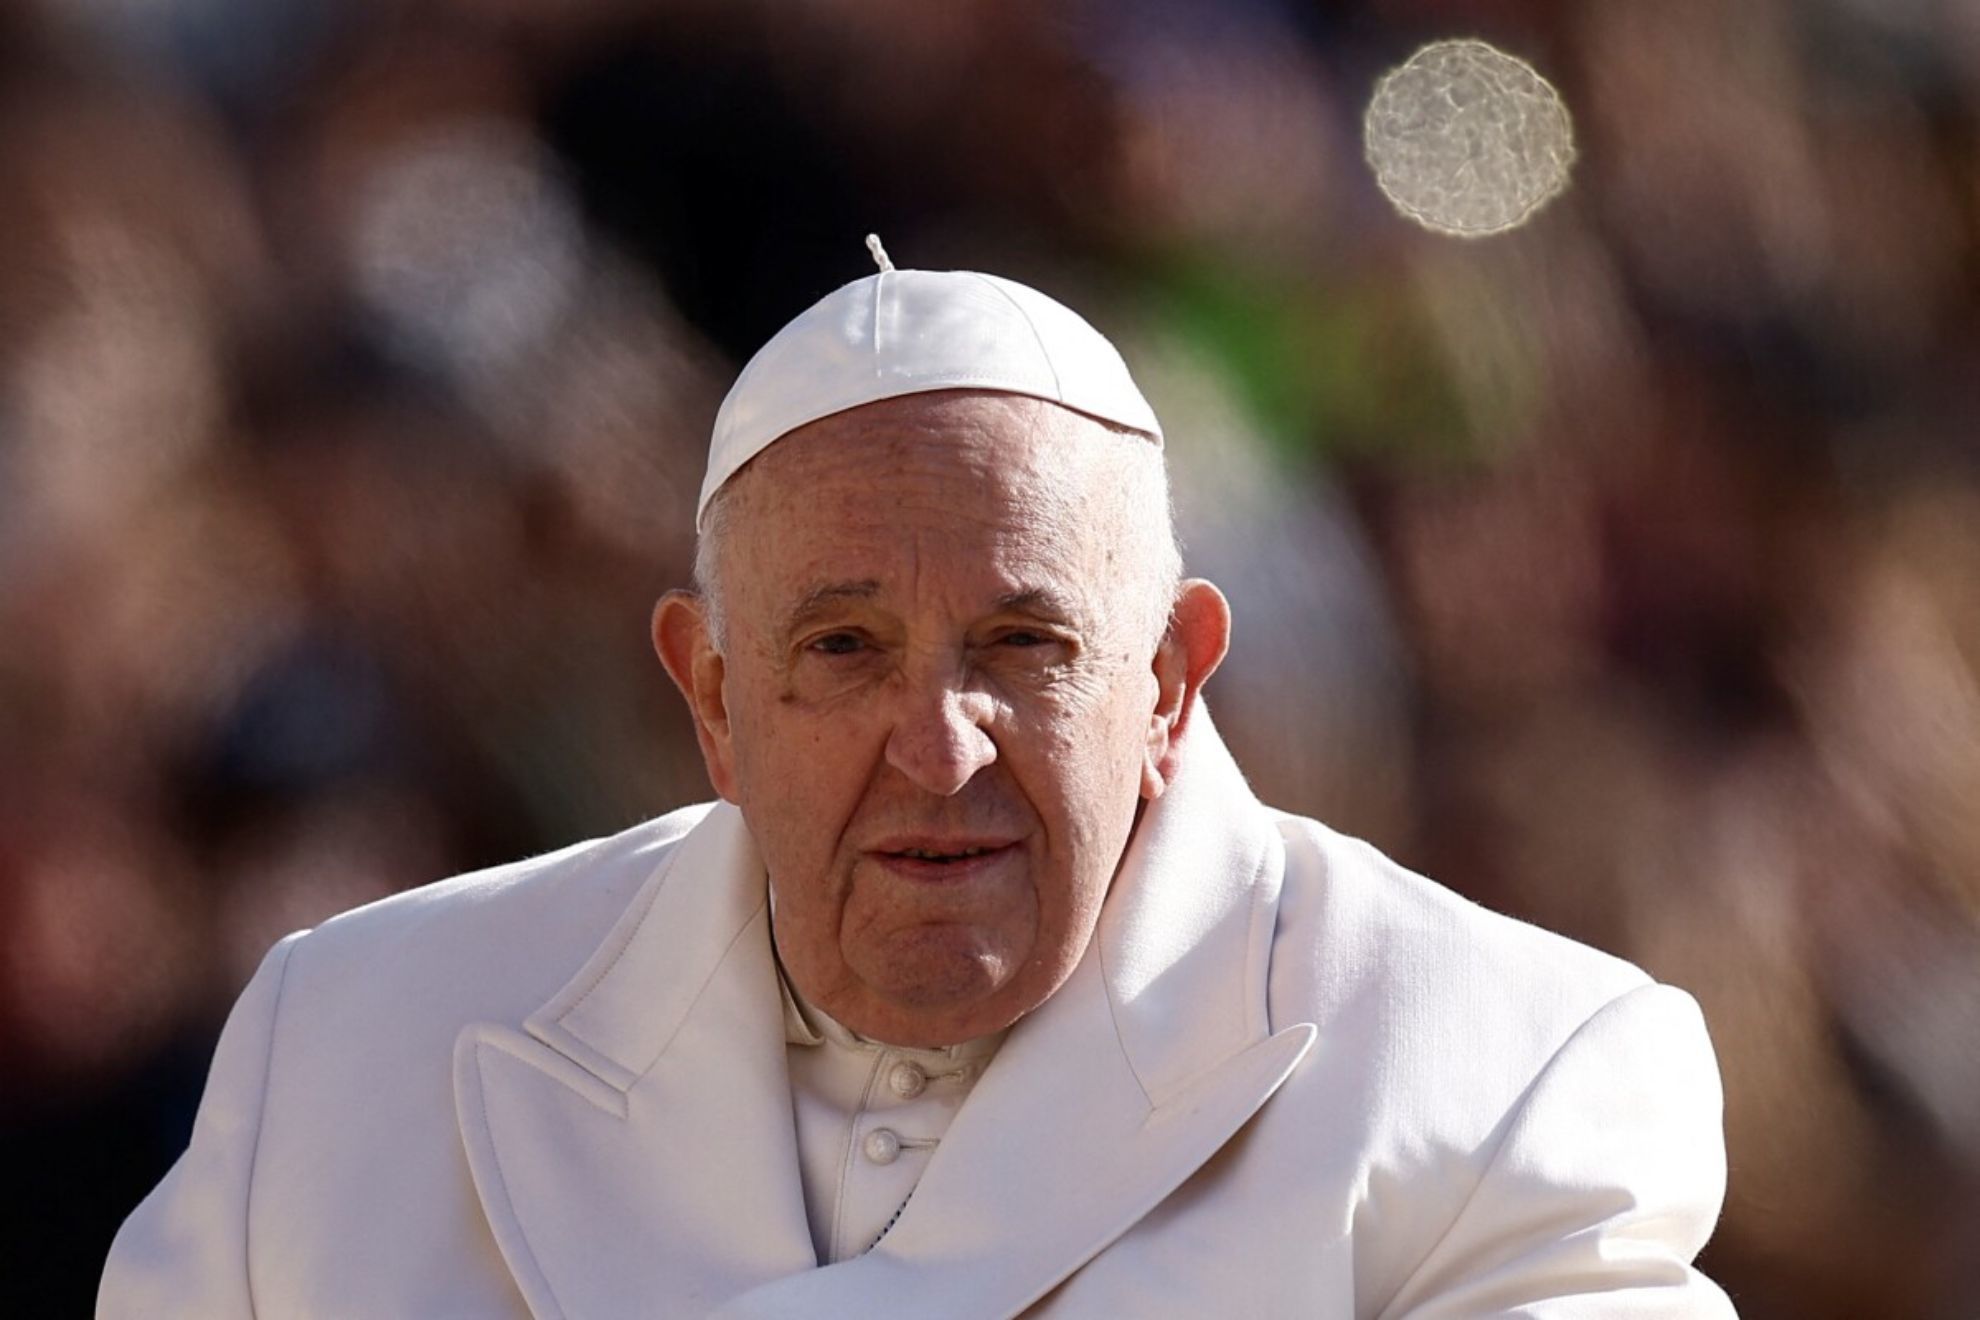 Las duras palabras del Papa Francisco contra la ideologa de gnero: "El peor peligro, anula las diferencias"